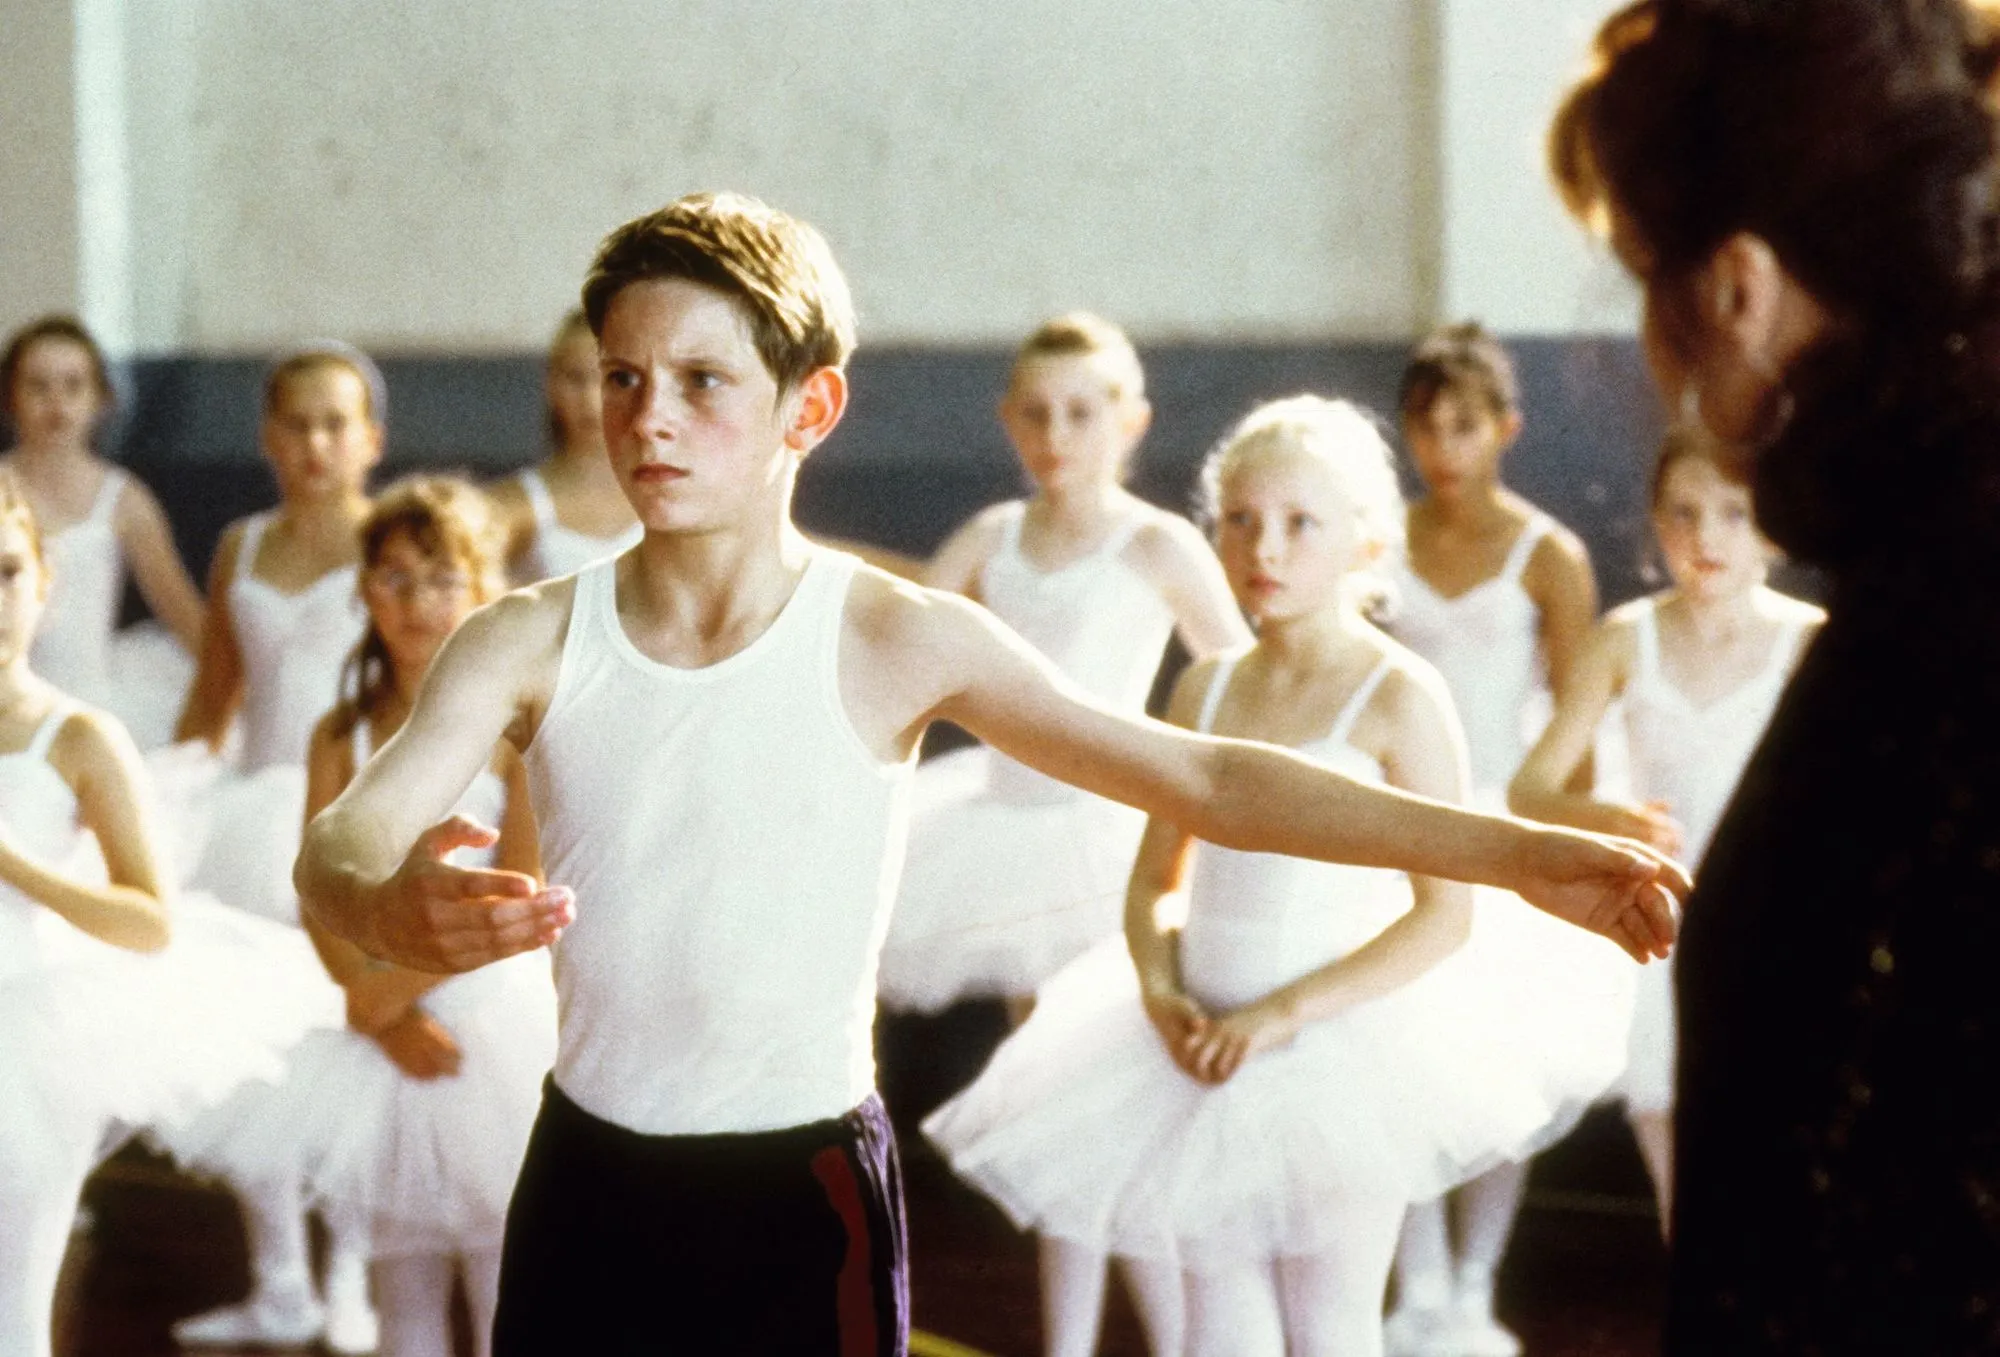 Billy Elliot, un film de Stephen Daldry sorti en 2000, raconte l'histoire d'un garçon passionné de danse